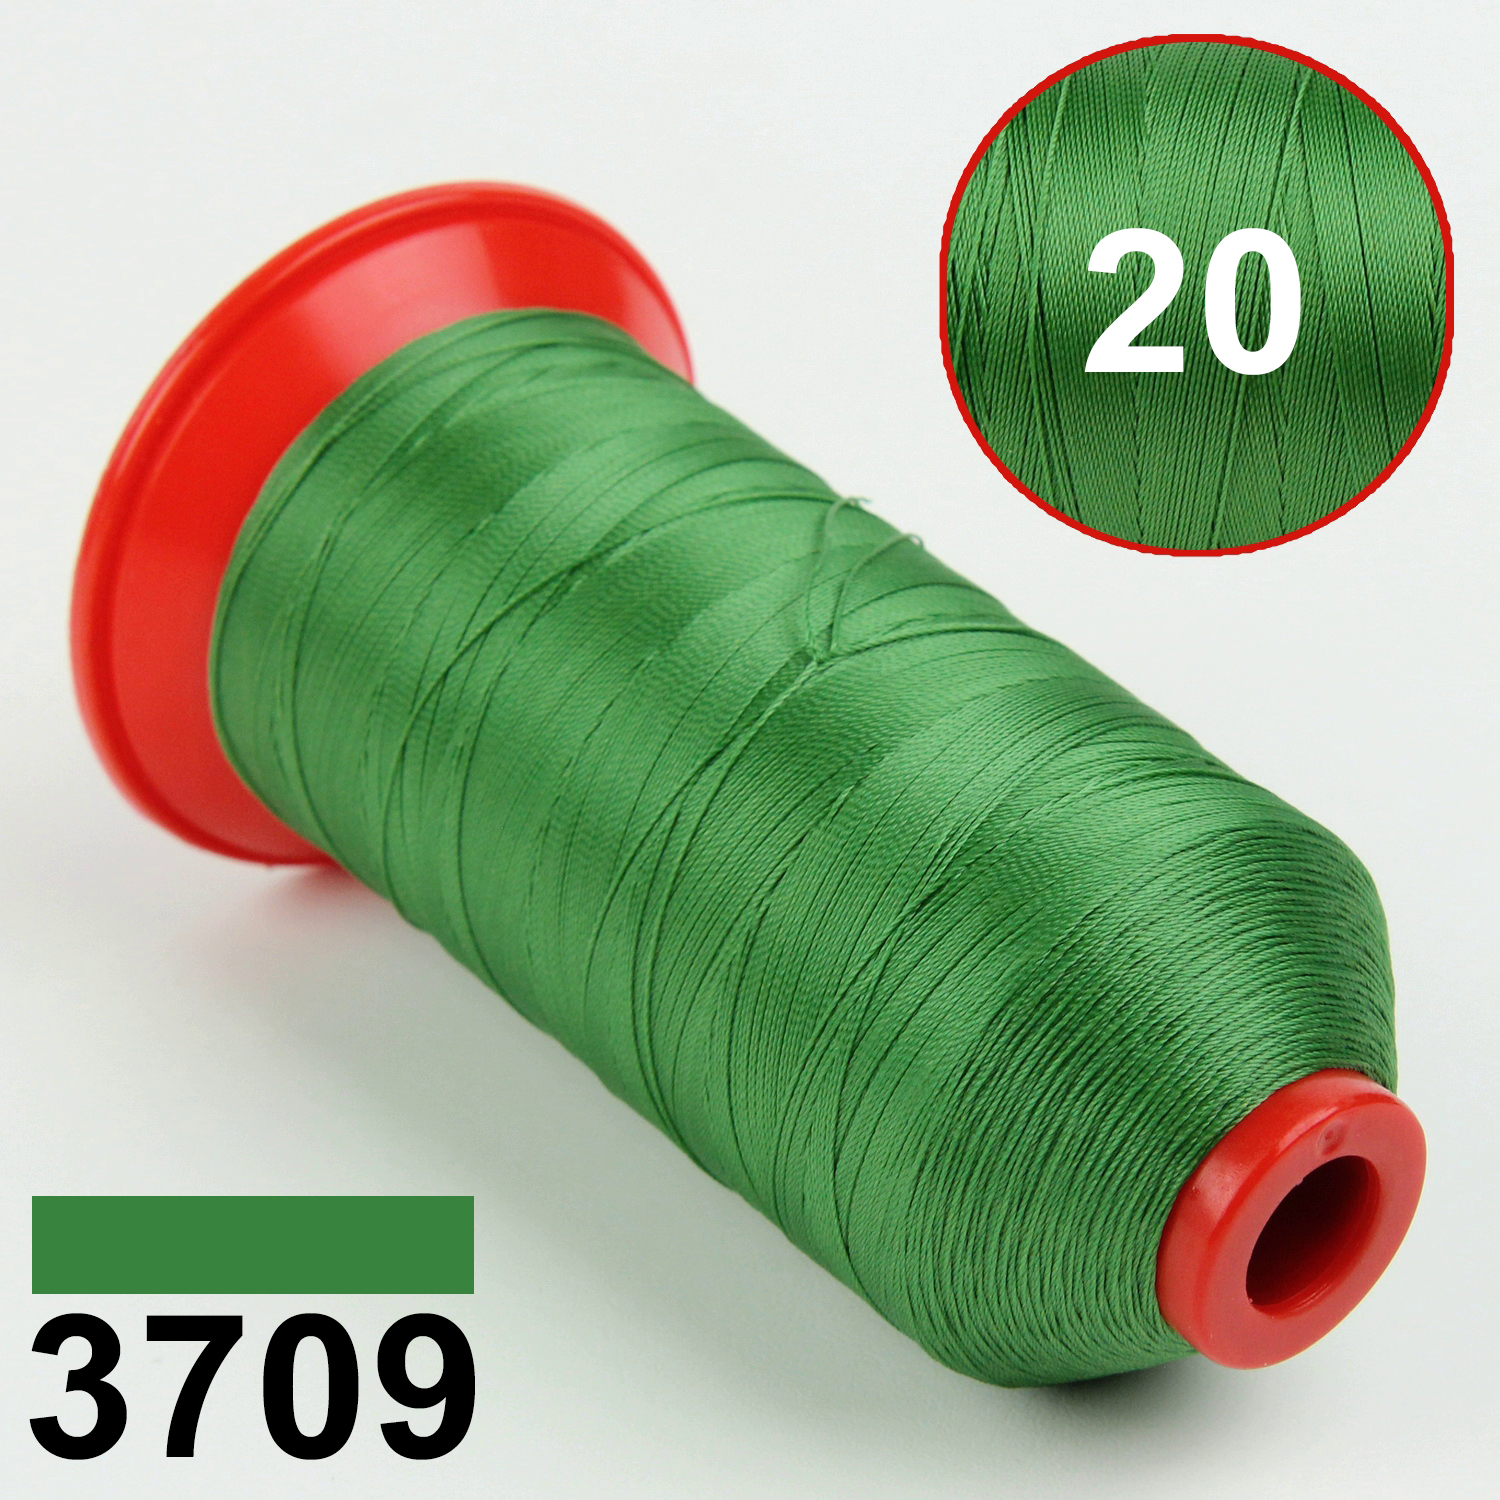 Нить POLYART(ПОЛИАРТ) N20 цвет 3709 светло-зеленый, для пошив чехлов на автомобильные сидения и руль, 1500м детальная фотка